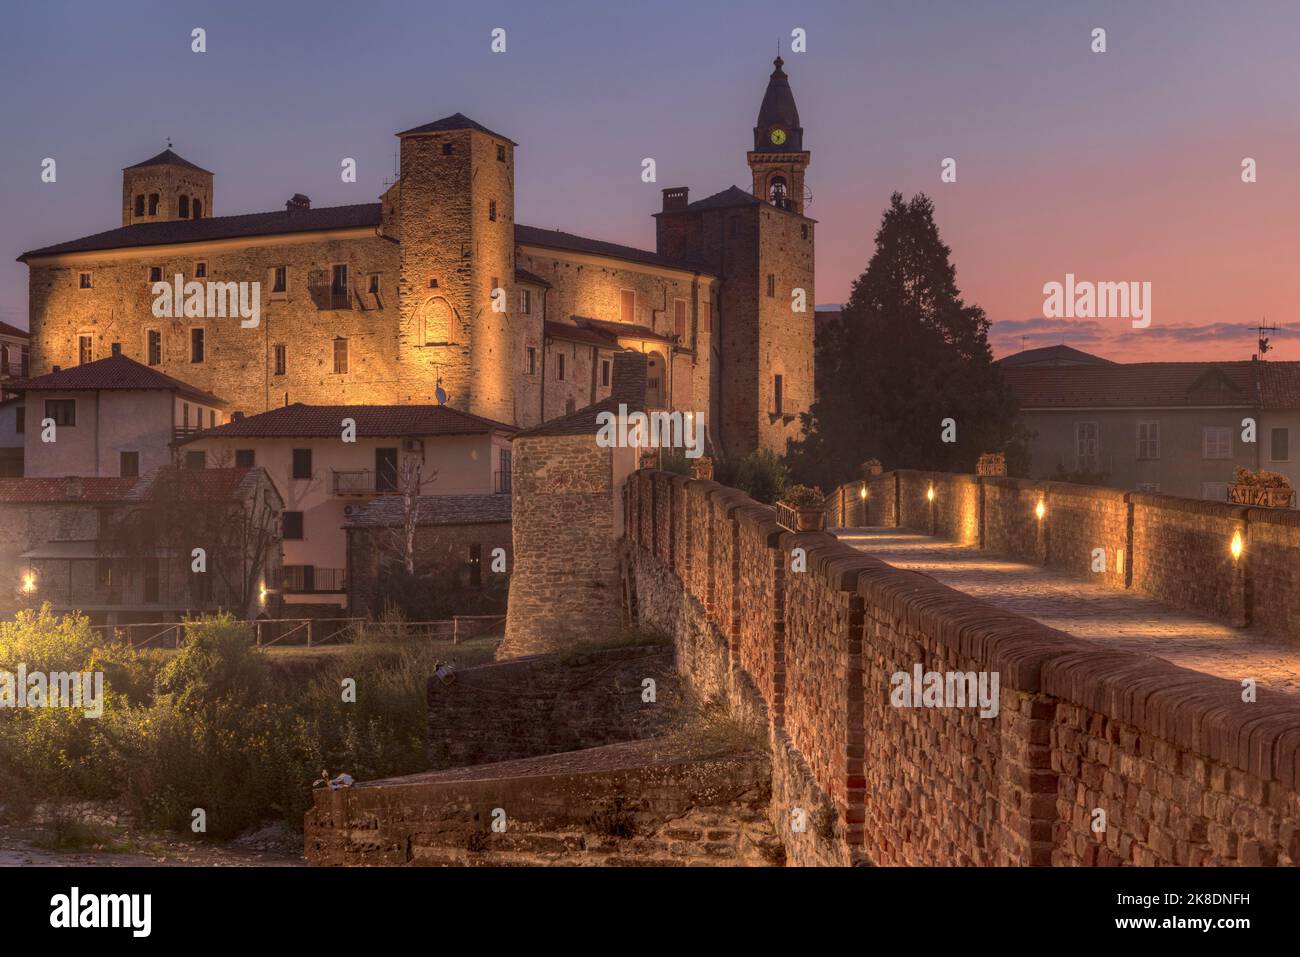 Monastero Bormida, Asti, Piamonte, Italia Foto de stock